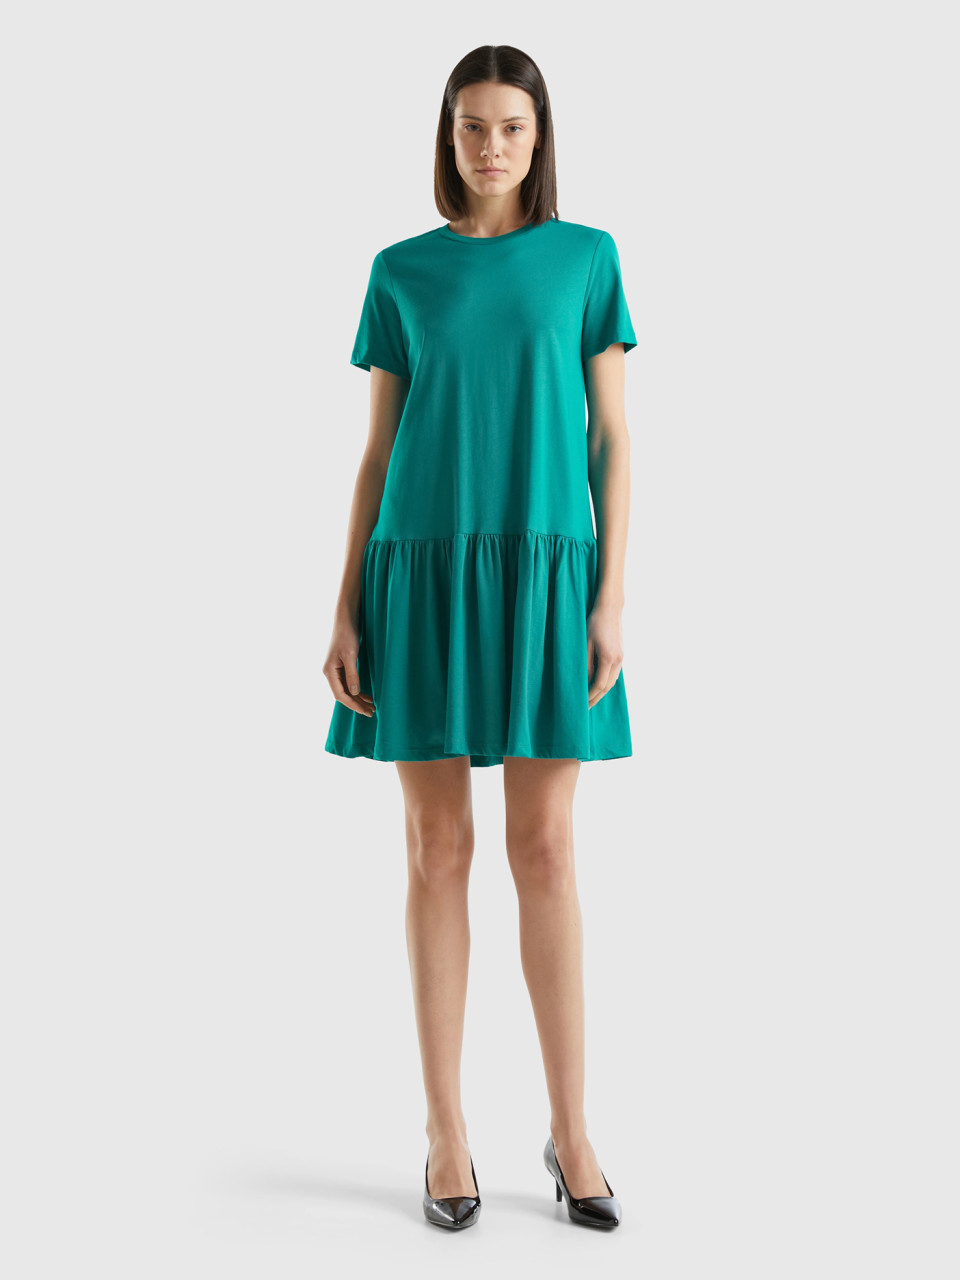 Benetton, Short Dress In Long Fiber Cotton, Teal, Women